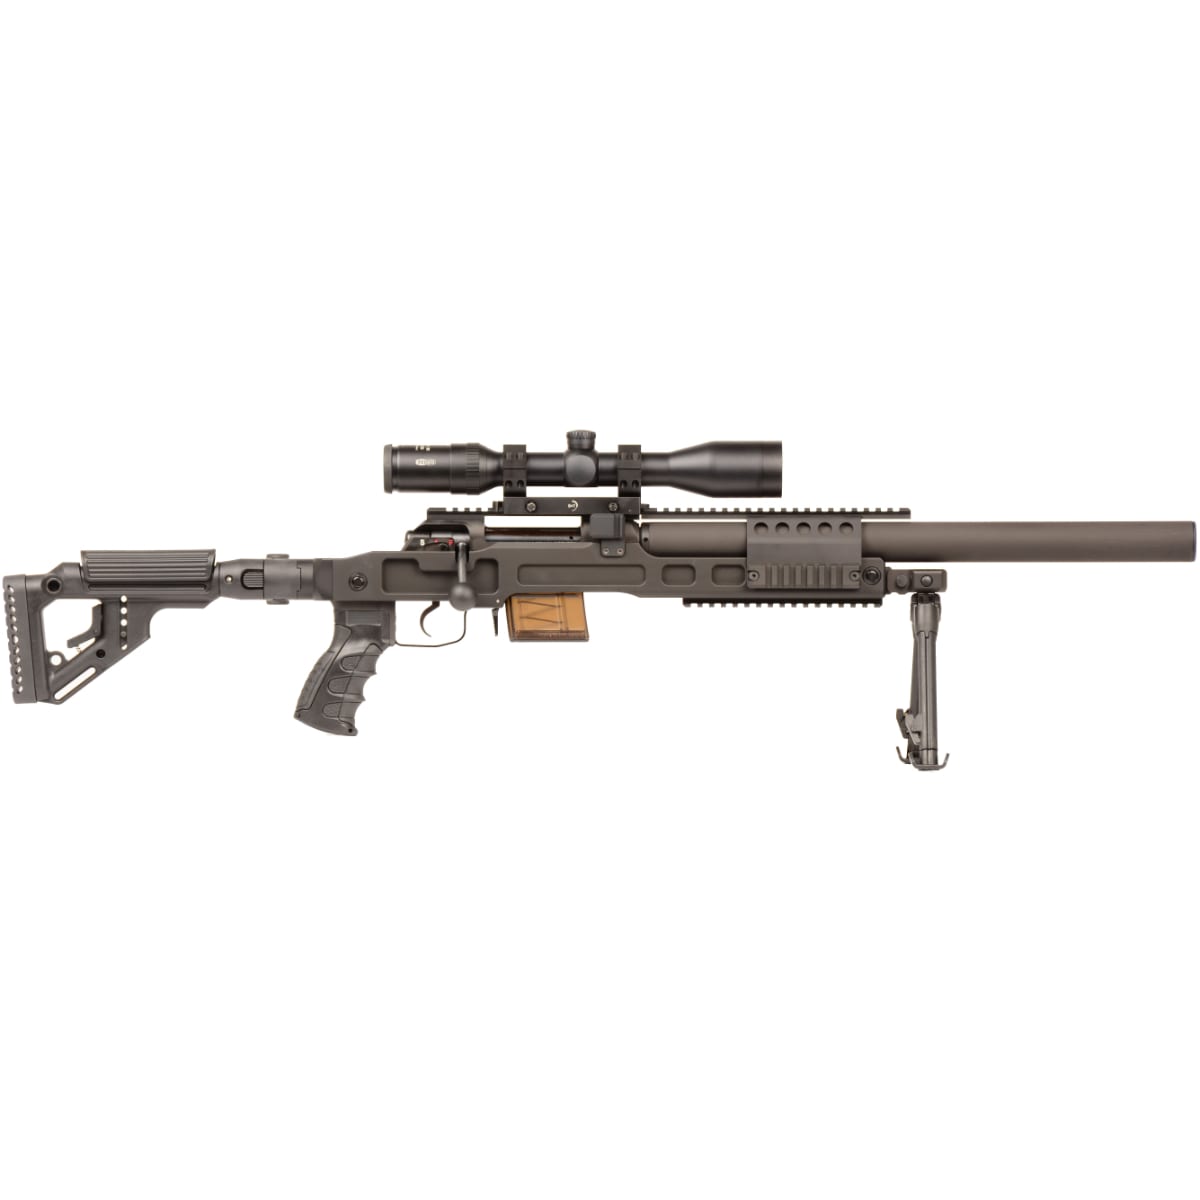 B&T SPR300 - .300 Blackout - Arlington Arms.